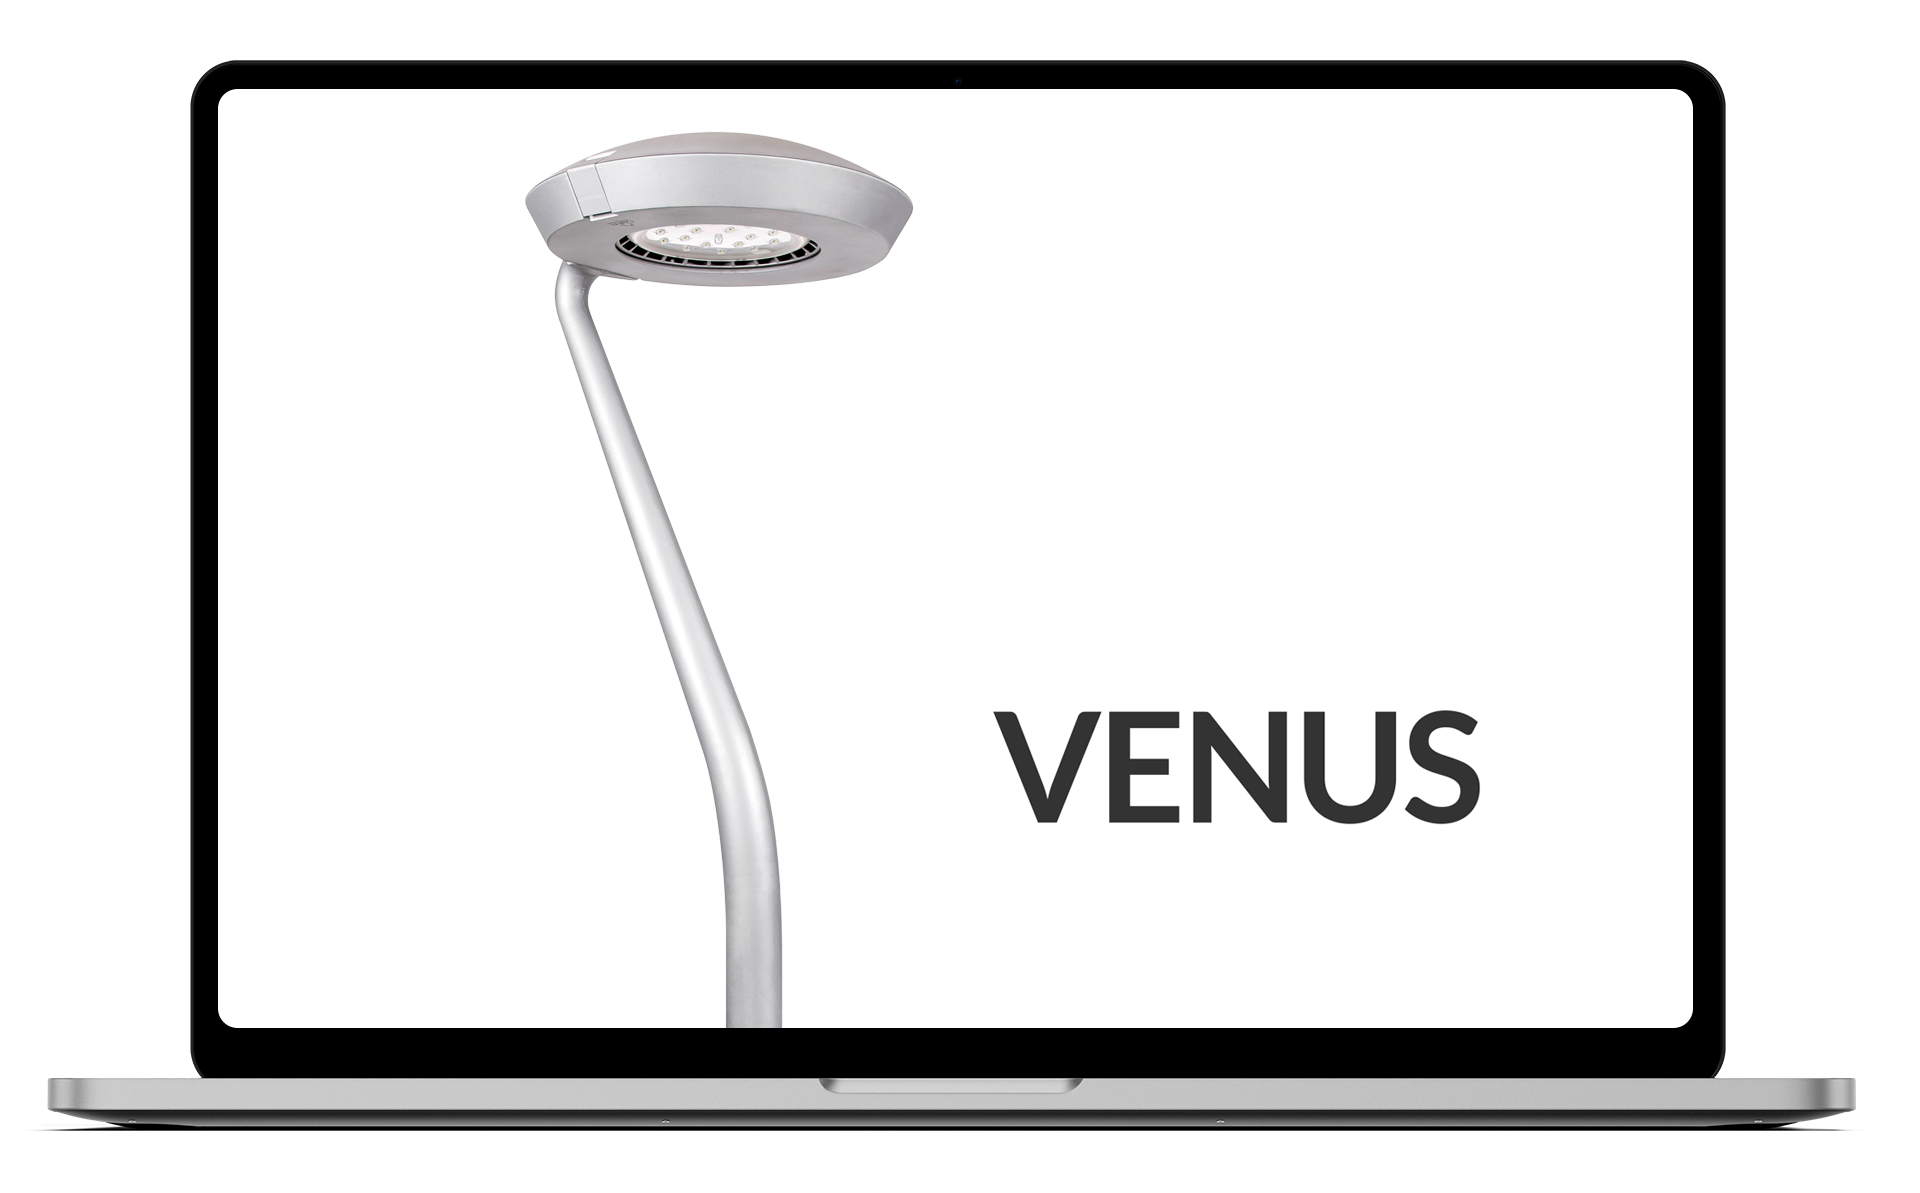 Venus S Max luminaire